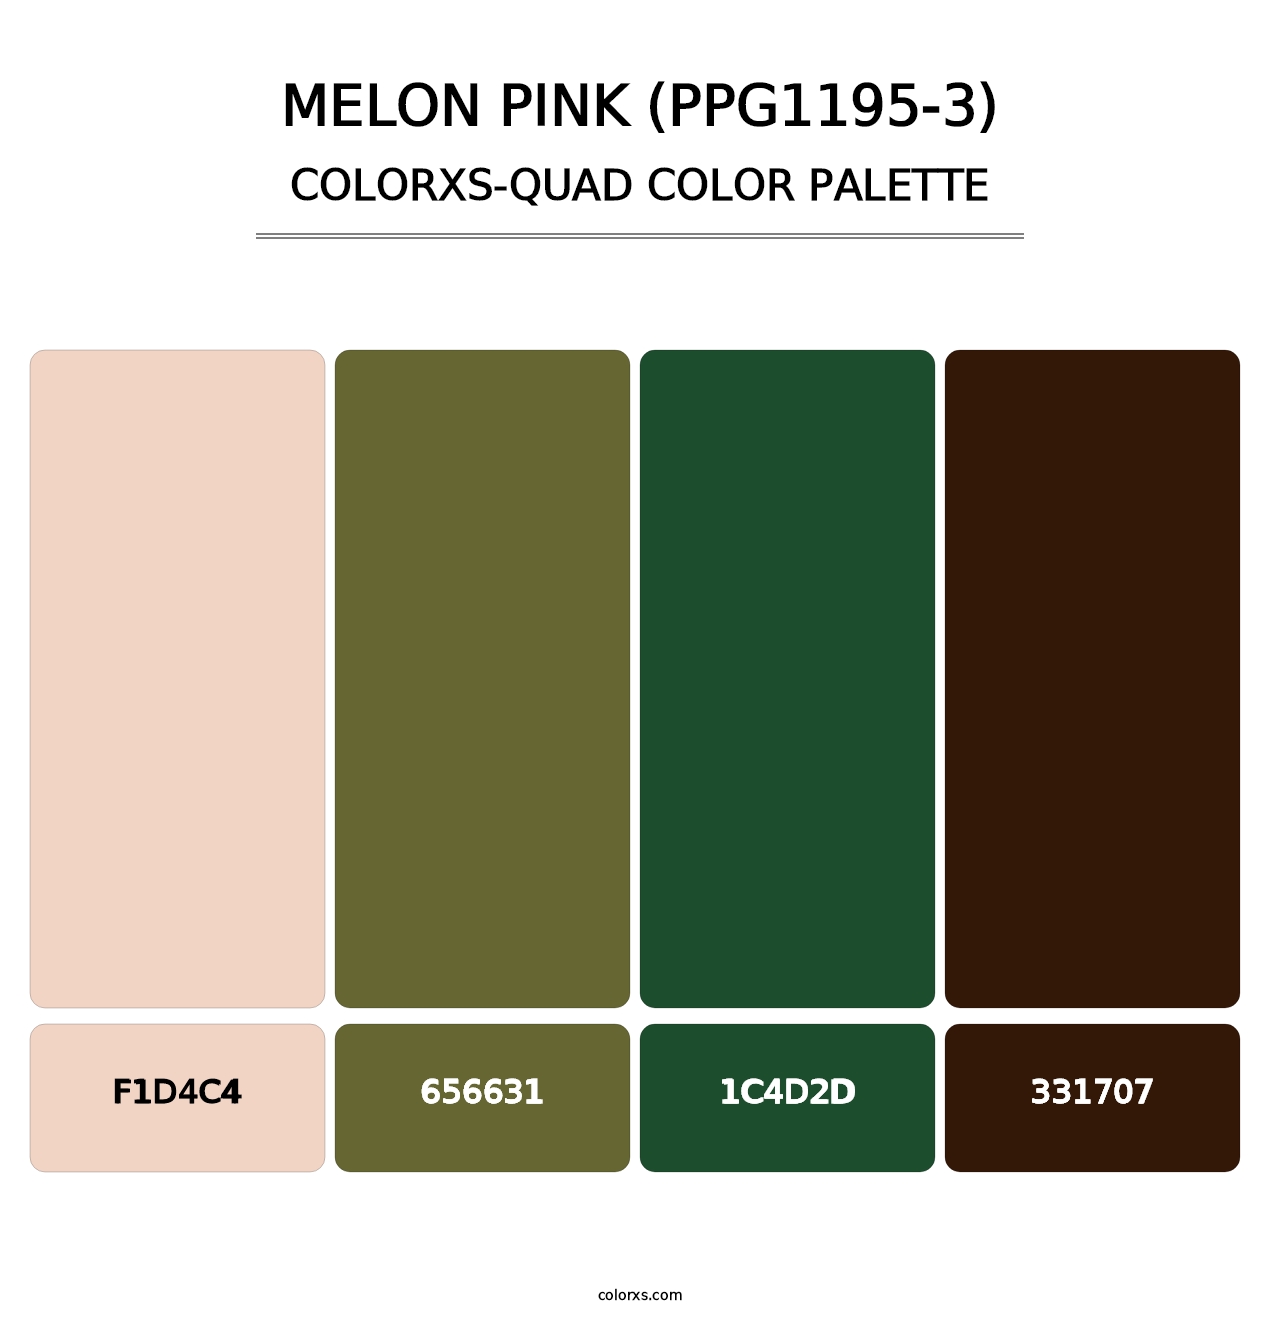 Melon Pink (PPG1195-3) - Colorxs Quad Palette